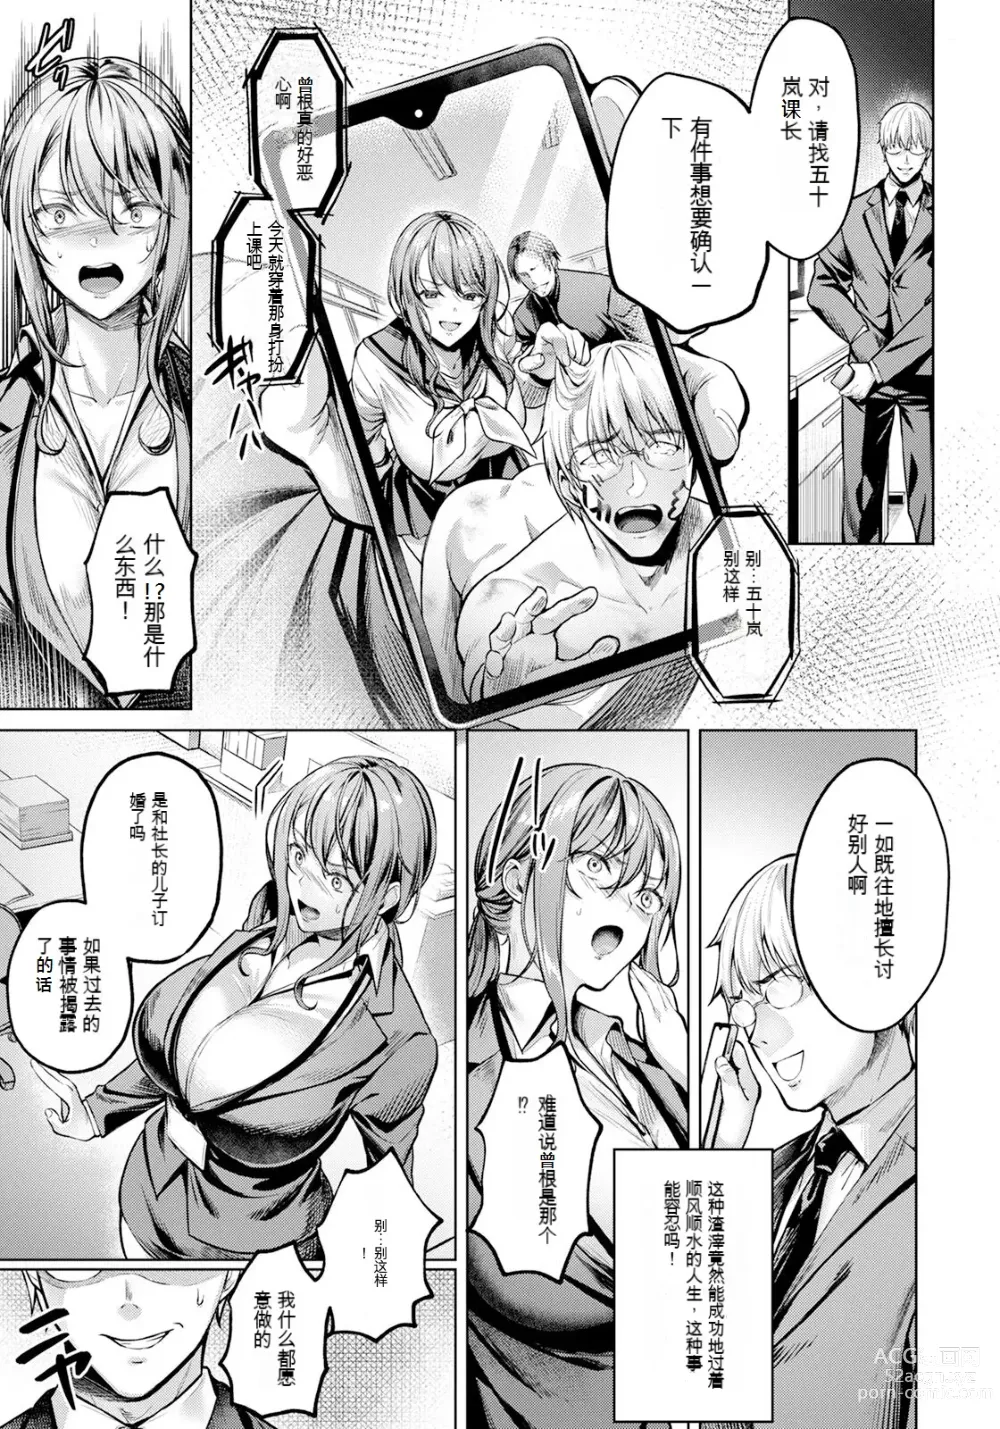 Page 6 of manga Fukushuu wa Mitsutsubo no Aji